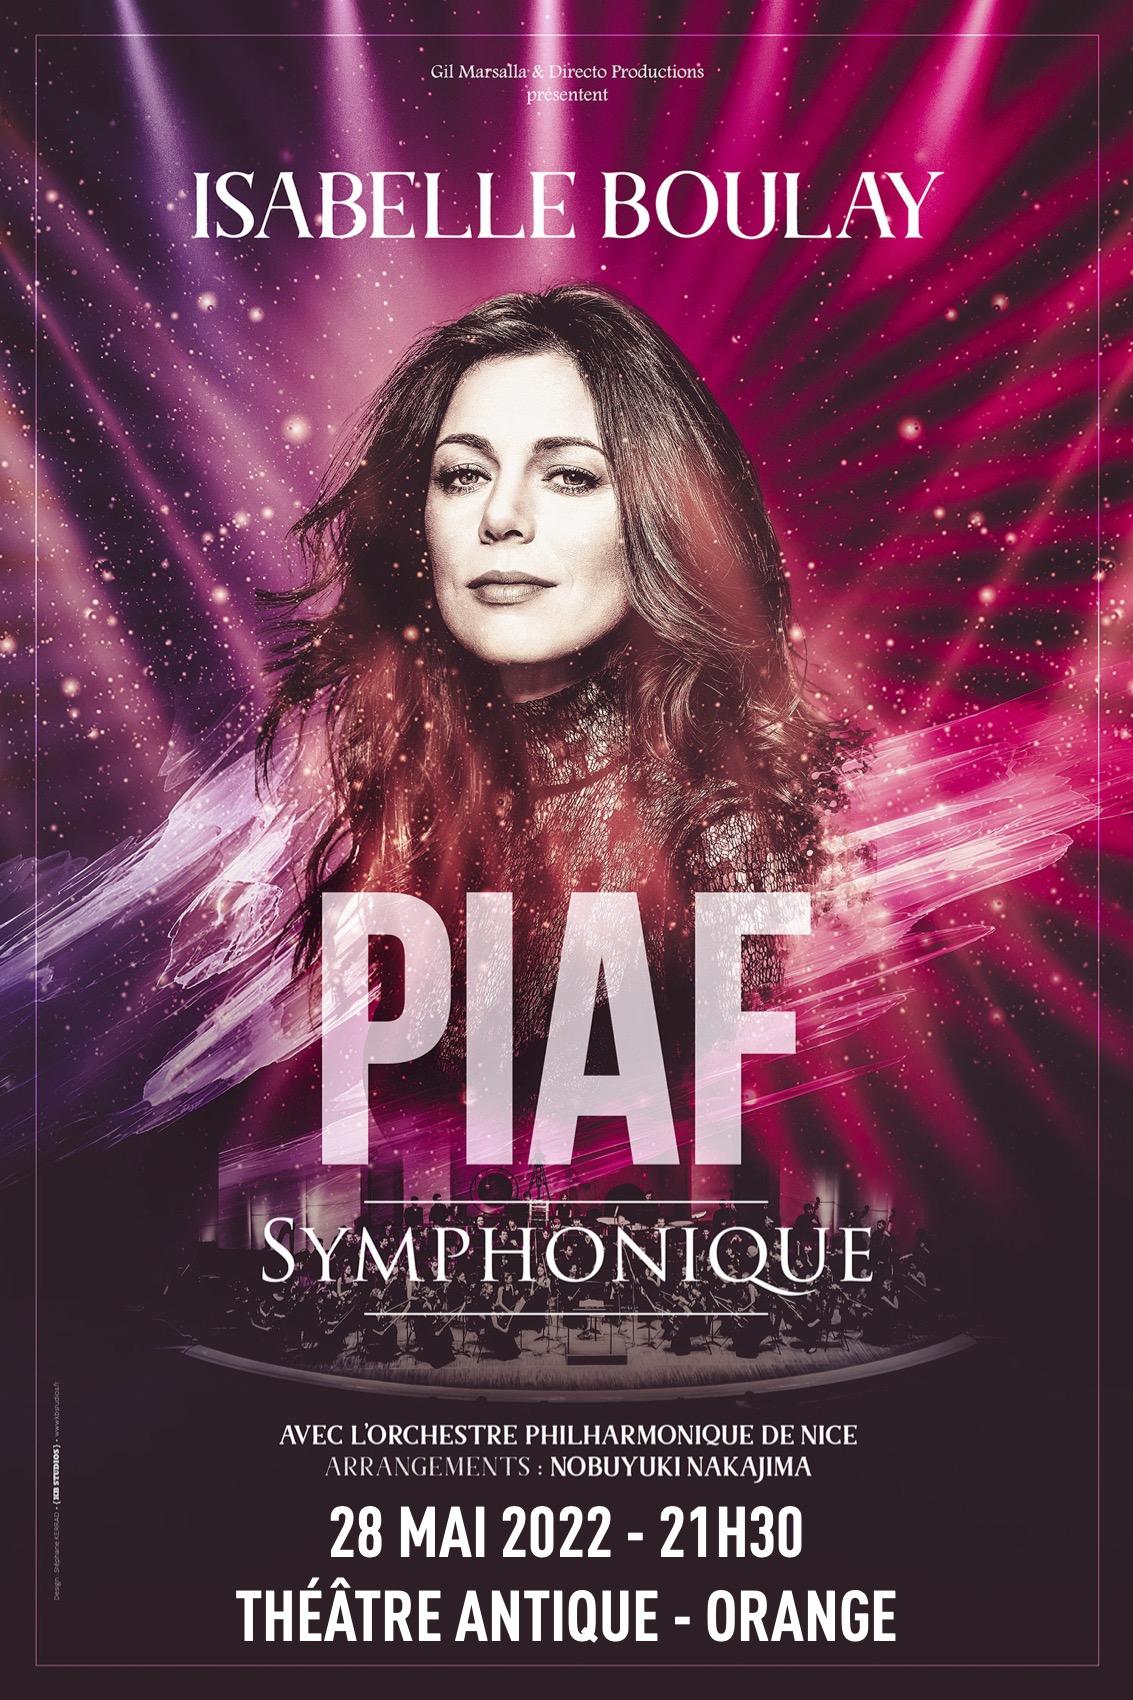 Isabelle Boulay, Piaf Symphonique à Orange, l'interview exclusive pour Raje